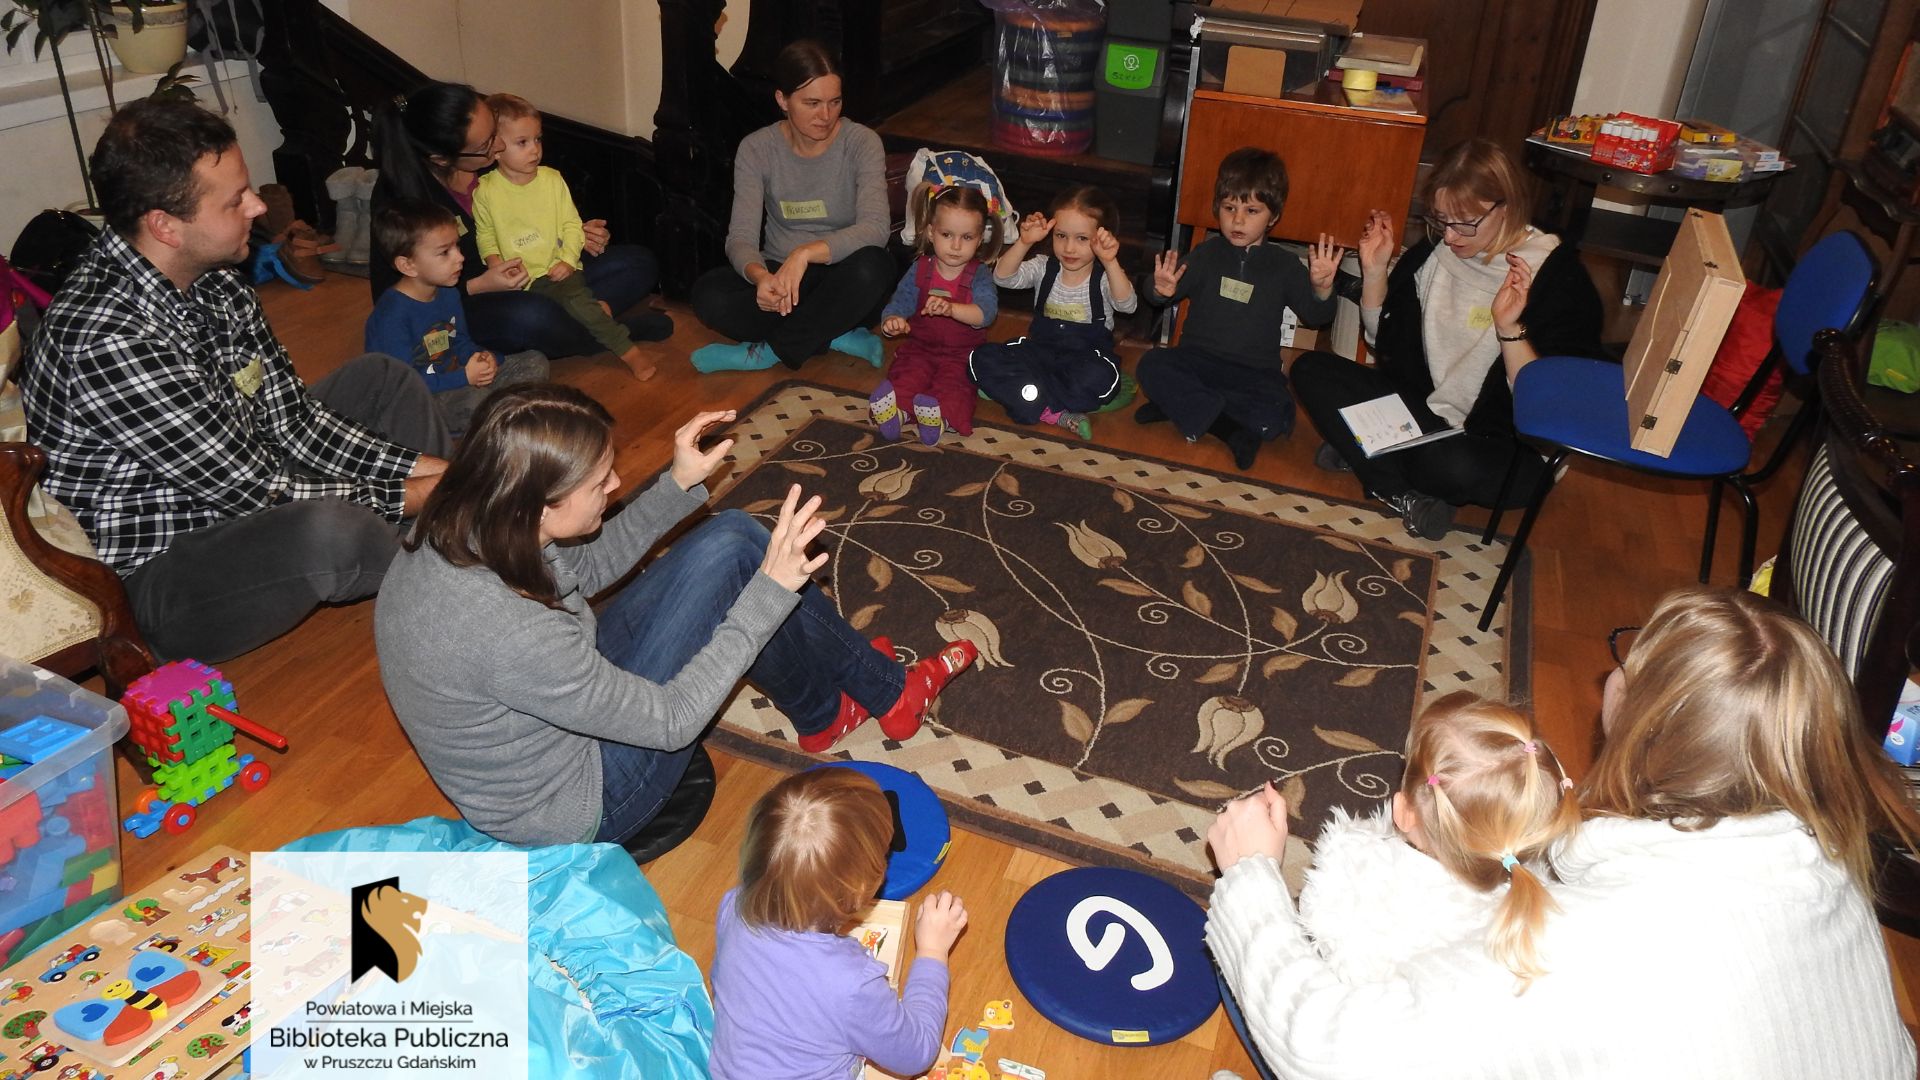 Grupa dzieci oraz kilkoro dorosłych siedzi w dużym kole z bibliotekarką Joanną Łabasiewicz, która na nogach trzyma otwartą książkę. Większość osób ma przed sobą uniesione dłonie pokazując różne gesty.